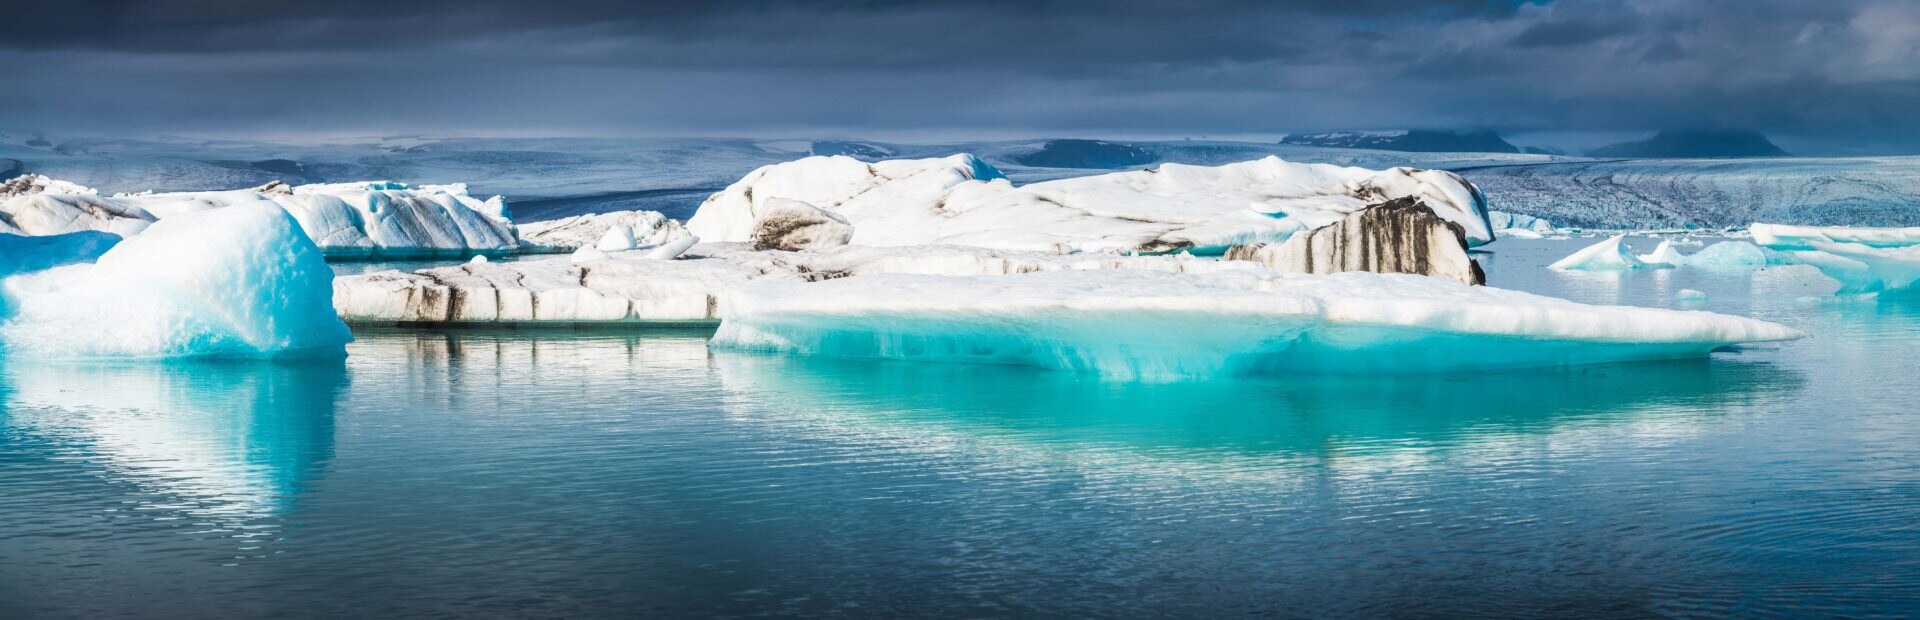 Imagen de Icebergs en el Ártico, donde una investigación apoyada por Fundación BBVA ha encontrado toneladas de plástico.